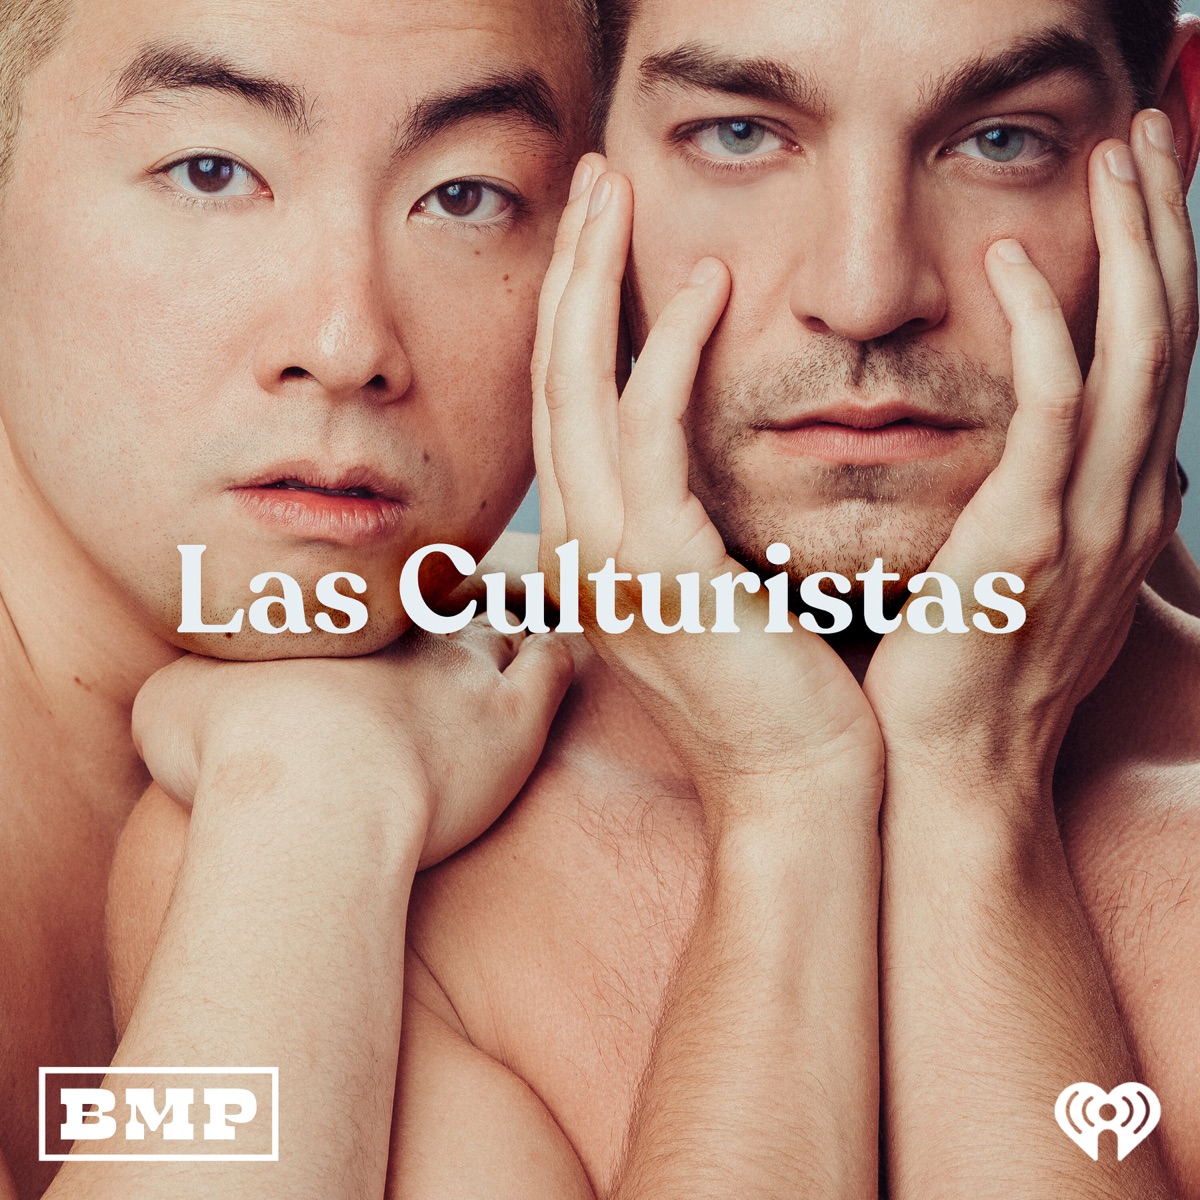 Las Culturistas with Matt Rogers and Bowen Yang â€“ Podcast â€“ Podtail